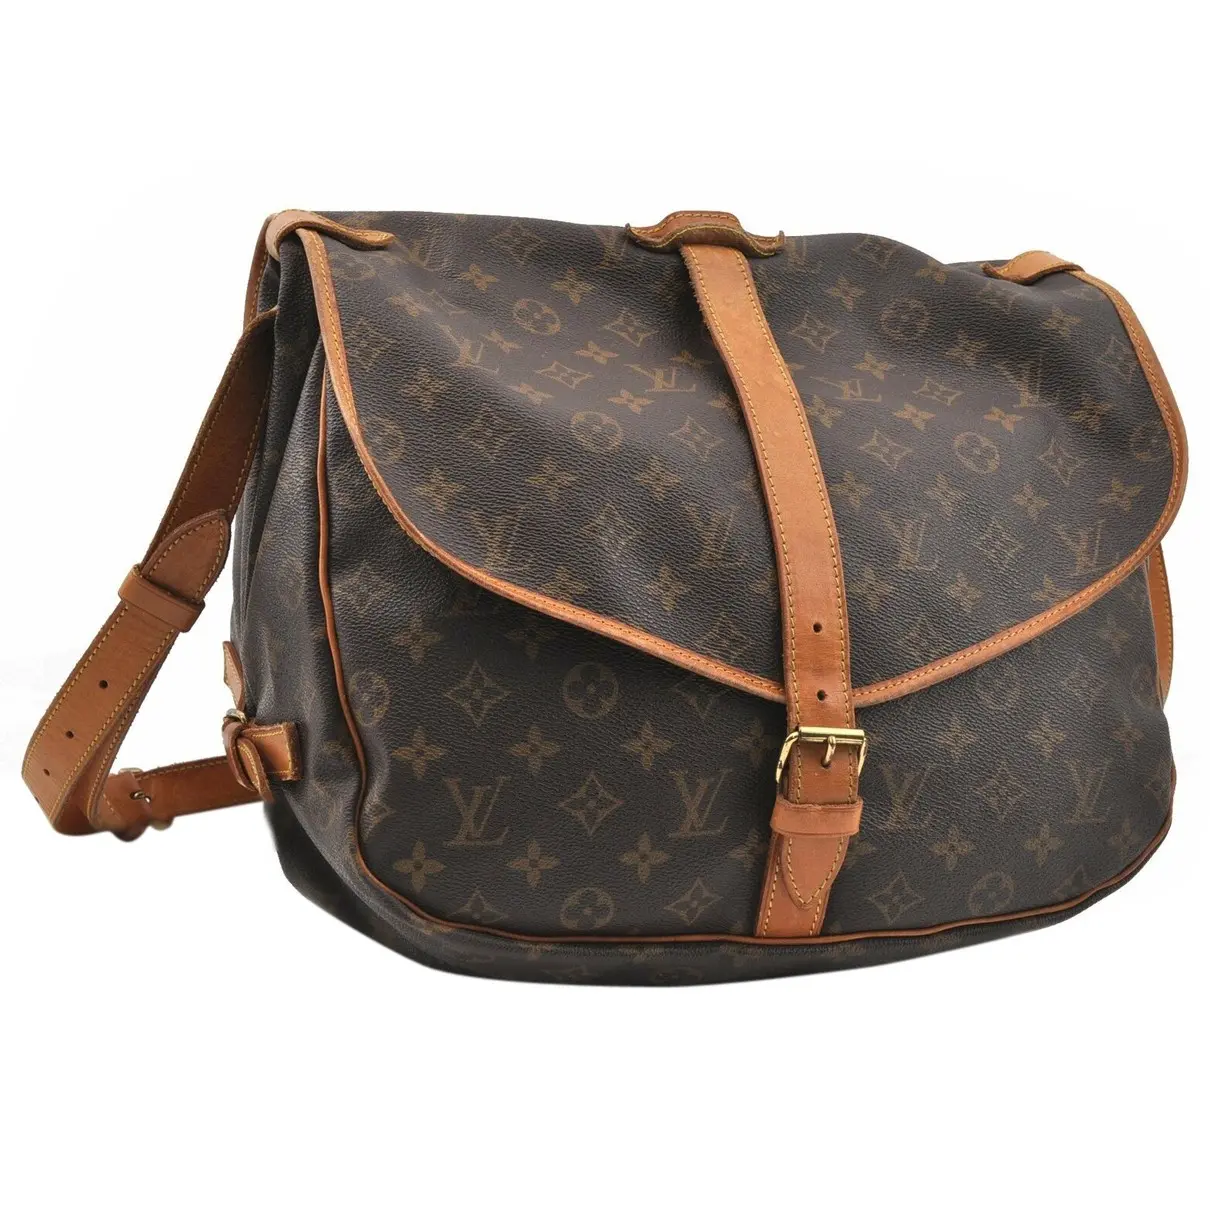 Saumur cloth handbag Louis Vuitton